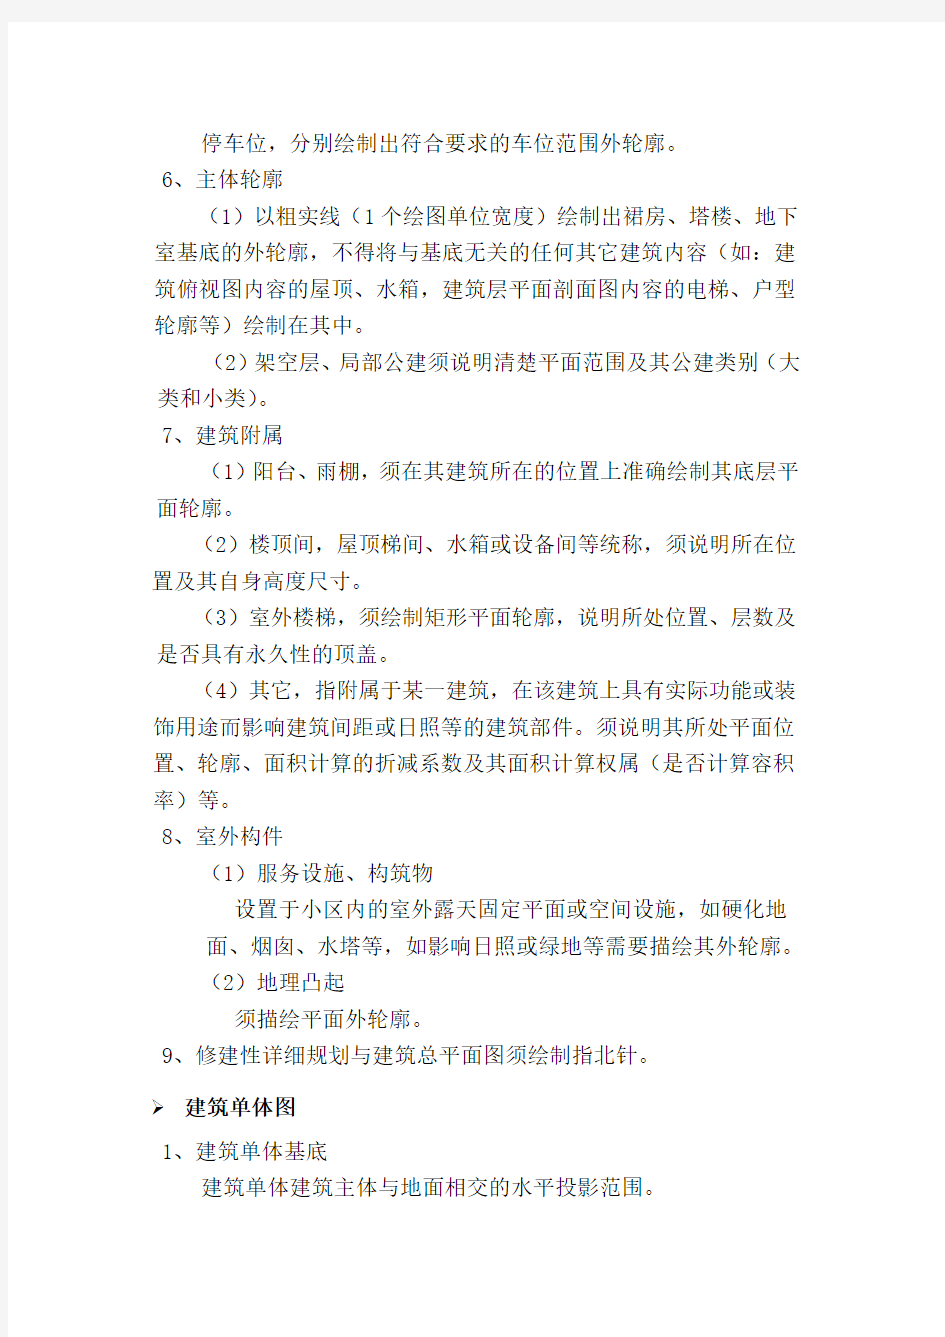 柳州市规划局电子报批规划设计方案技术规定(最终)